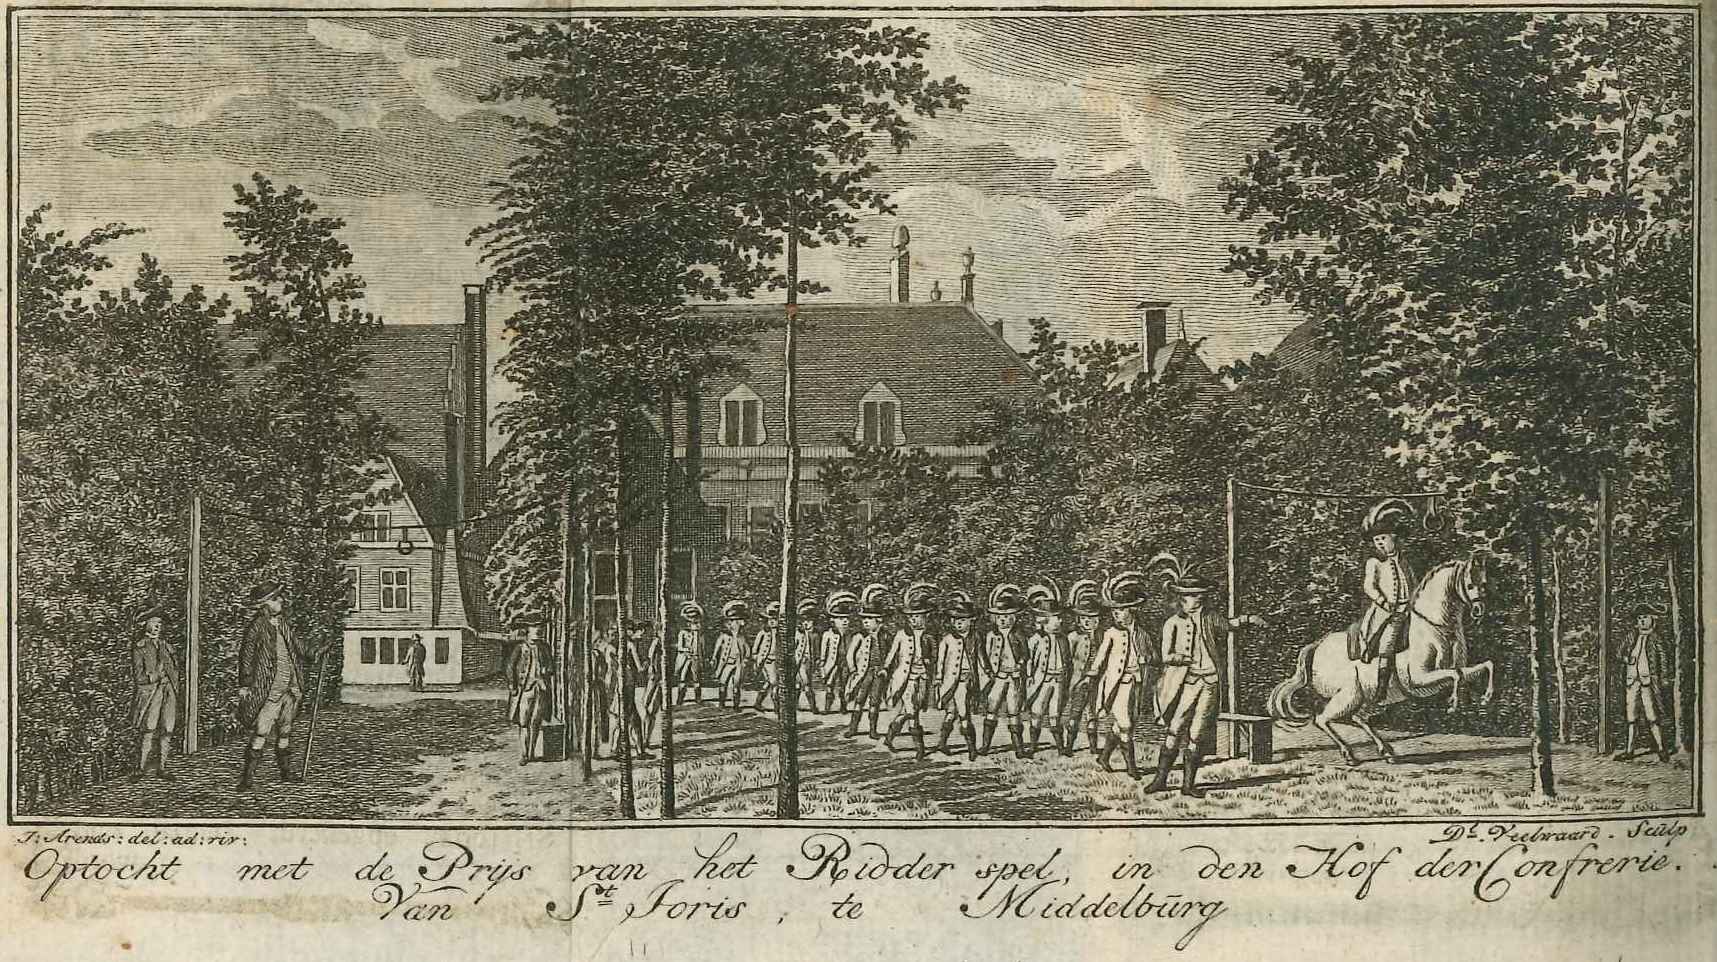 Optocht voor het ringrijden in het schuttershof van St. Joris in Middelburg, 1788.